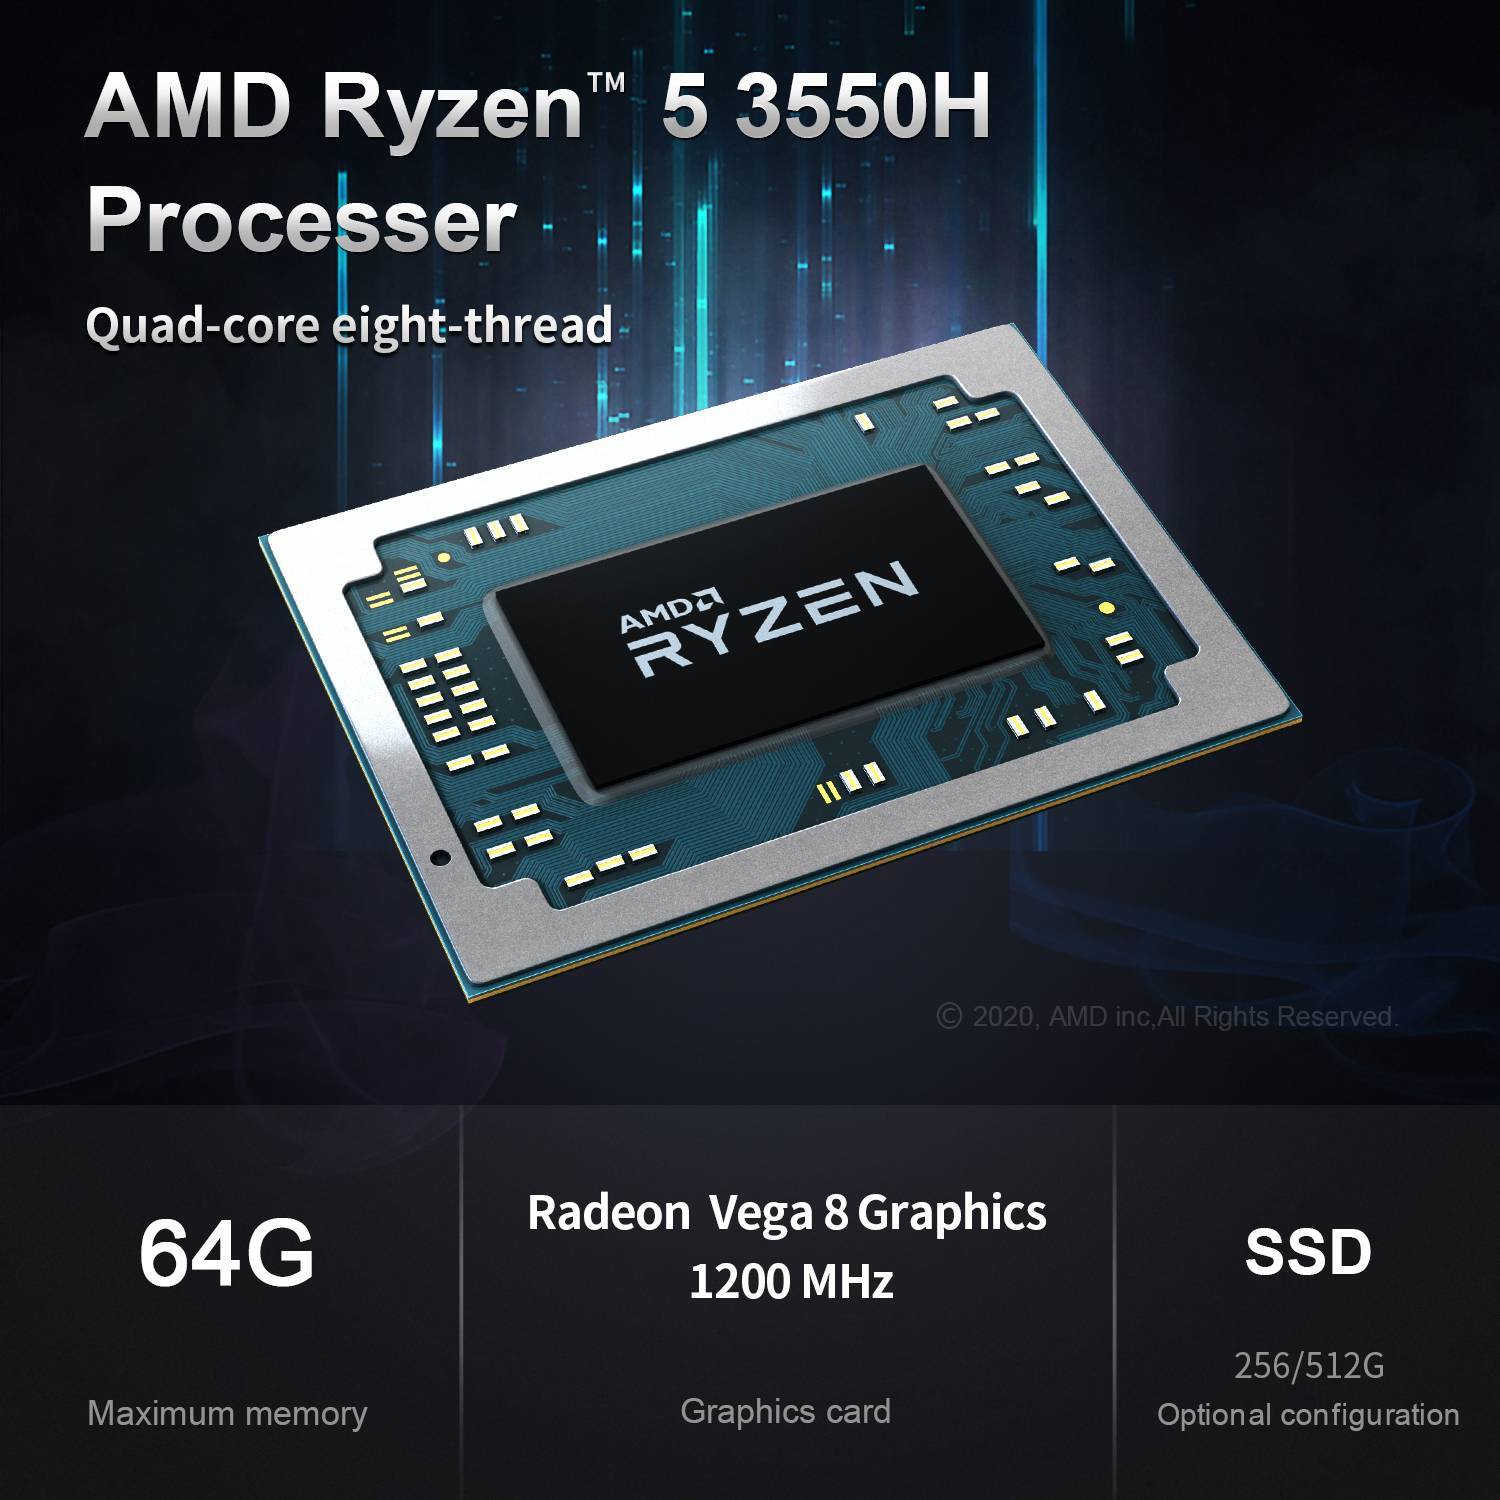 Beelink GT-R AMD Ryzen 5 Processor Overview